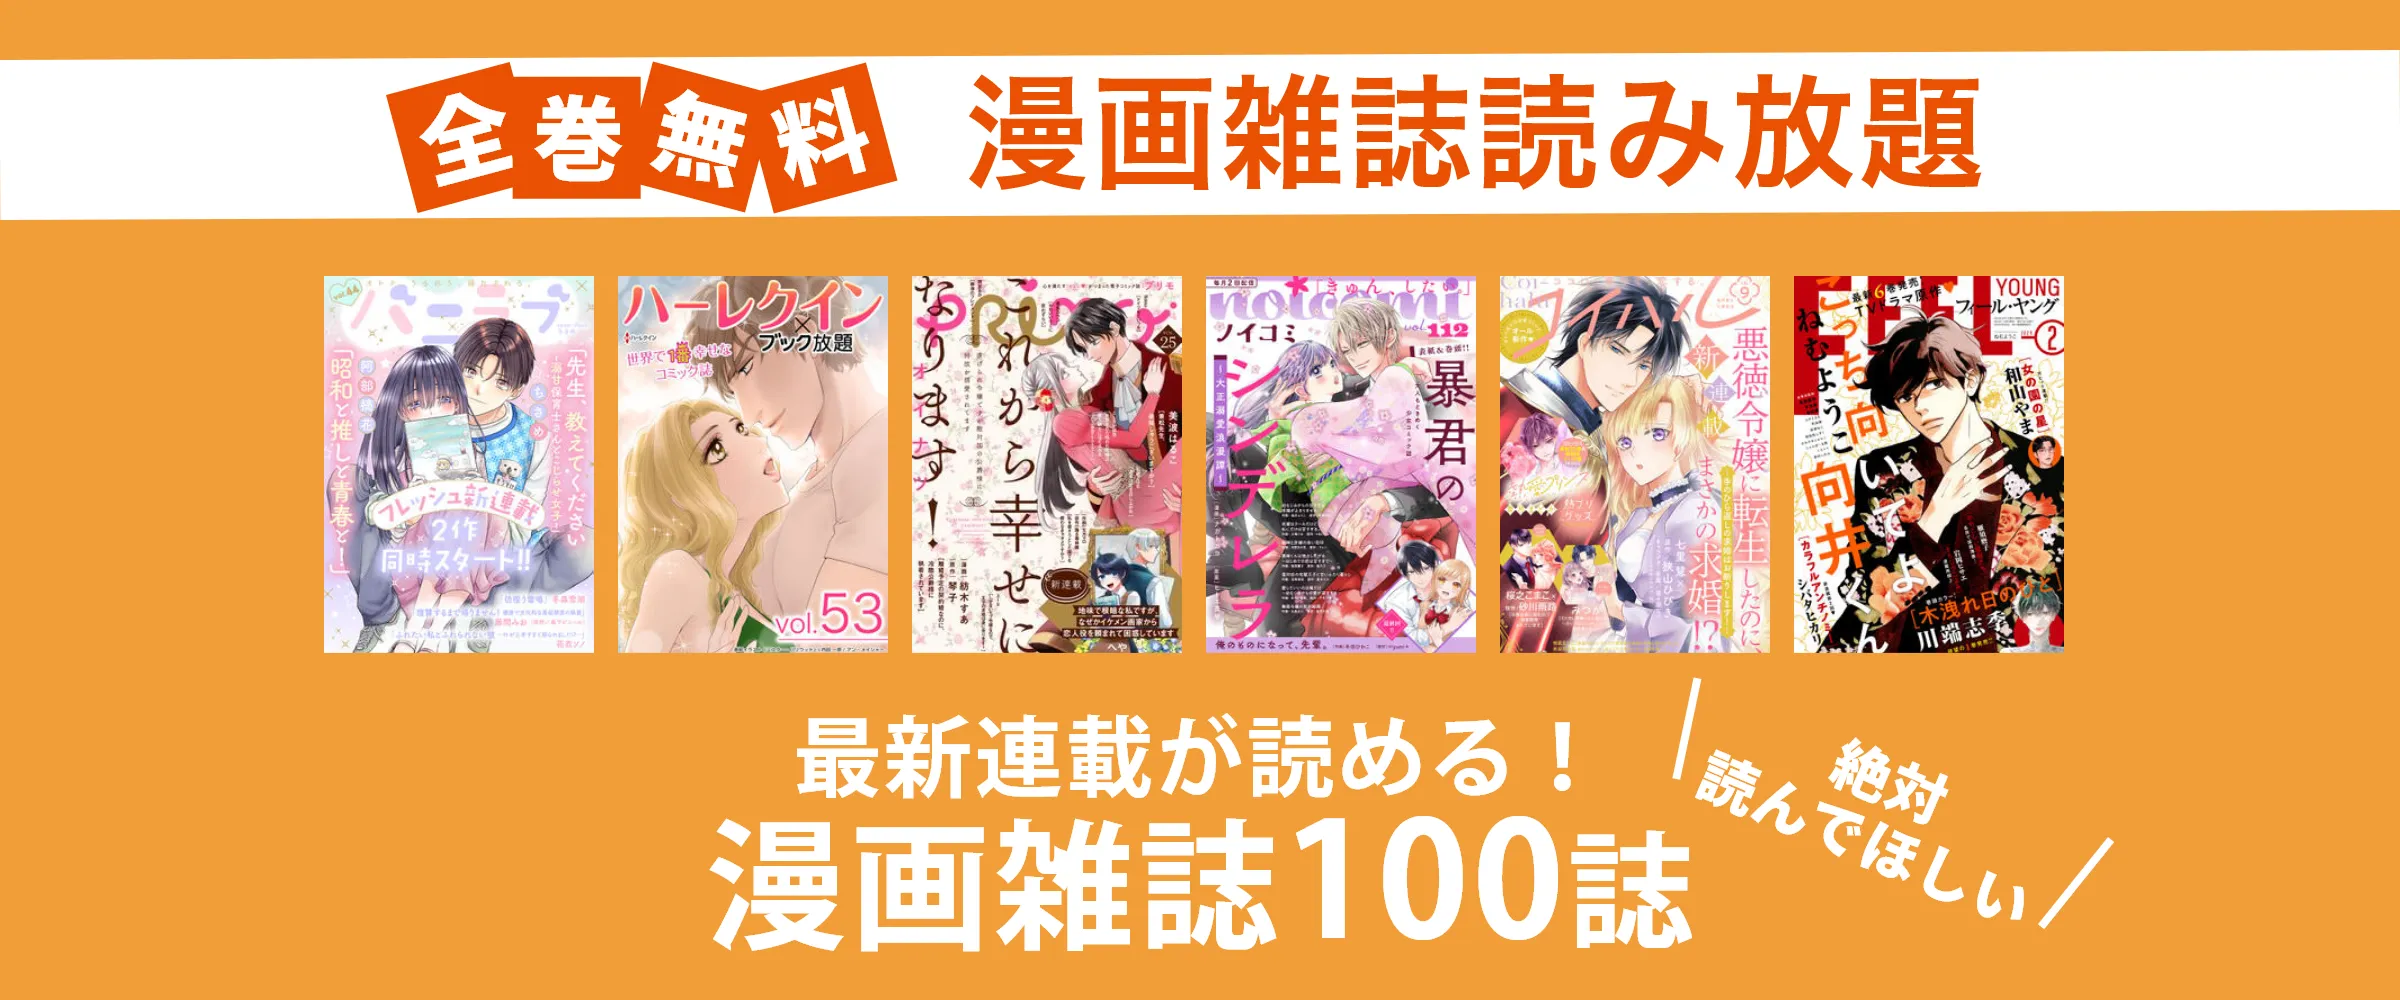 たった550円でnoicomi、FEELYOUNG、コミックベリーズなど漫画雑誌100誌以上読み放題。最初の1ヵ月無料。